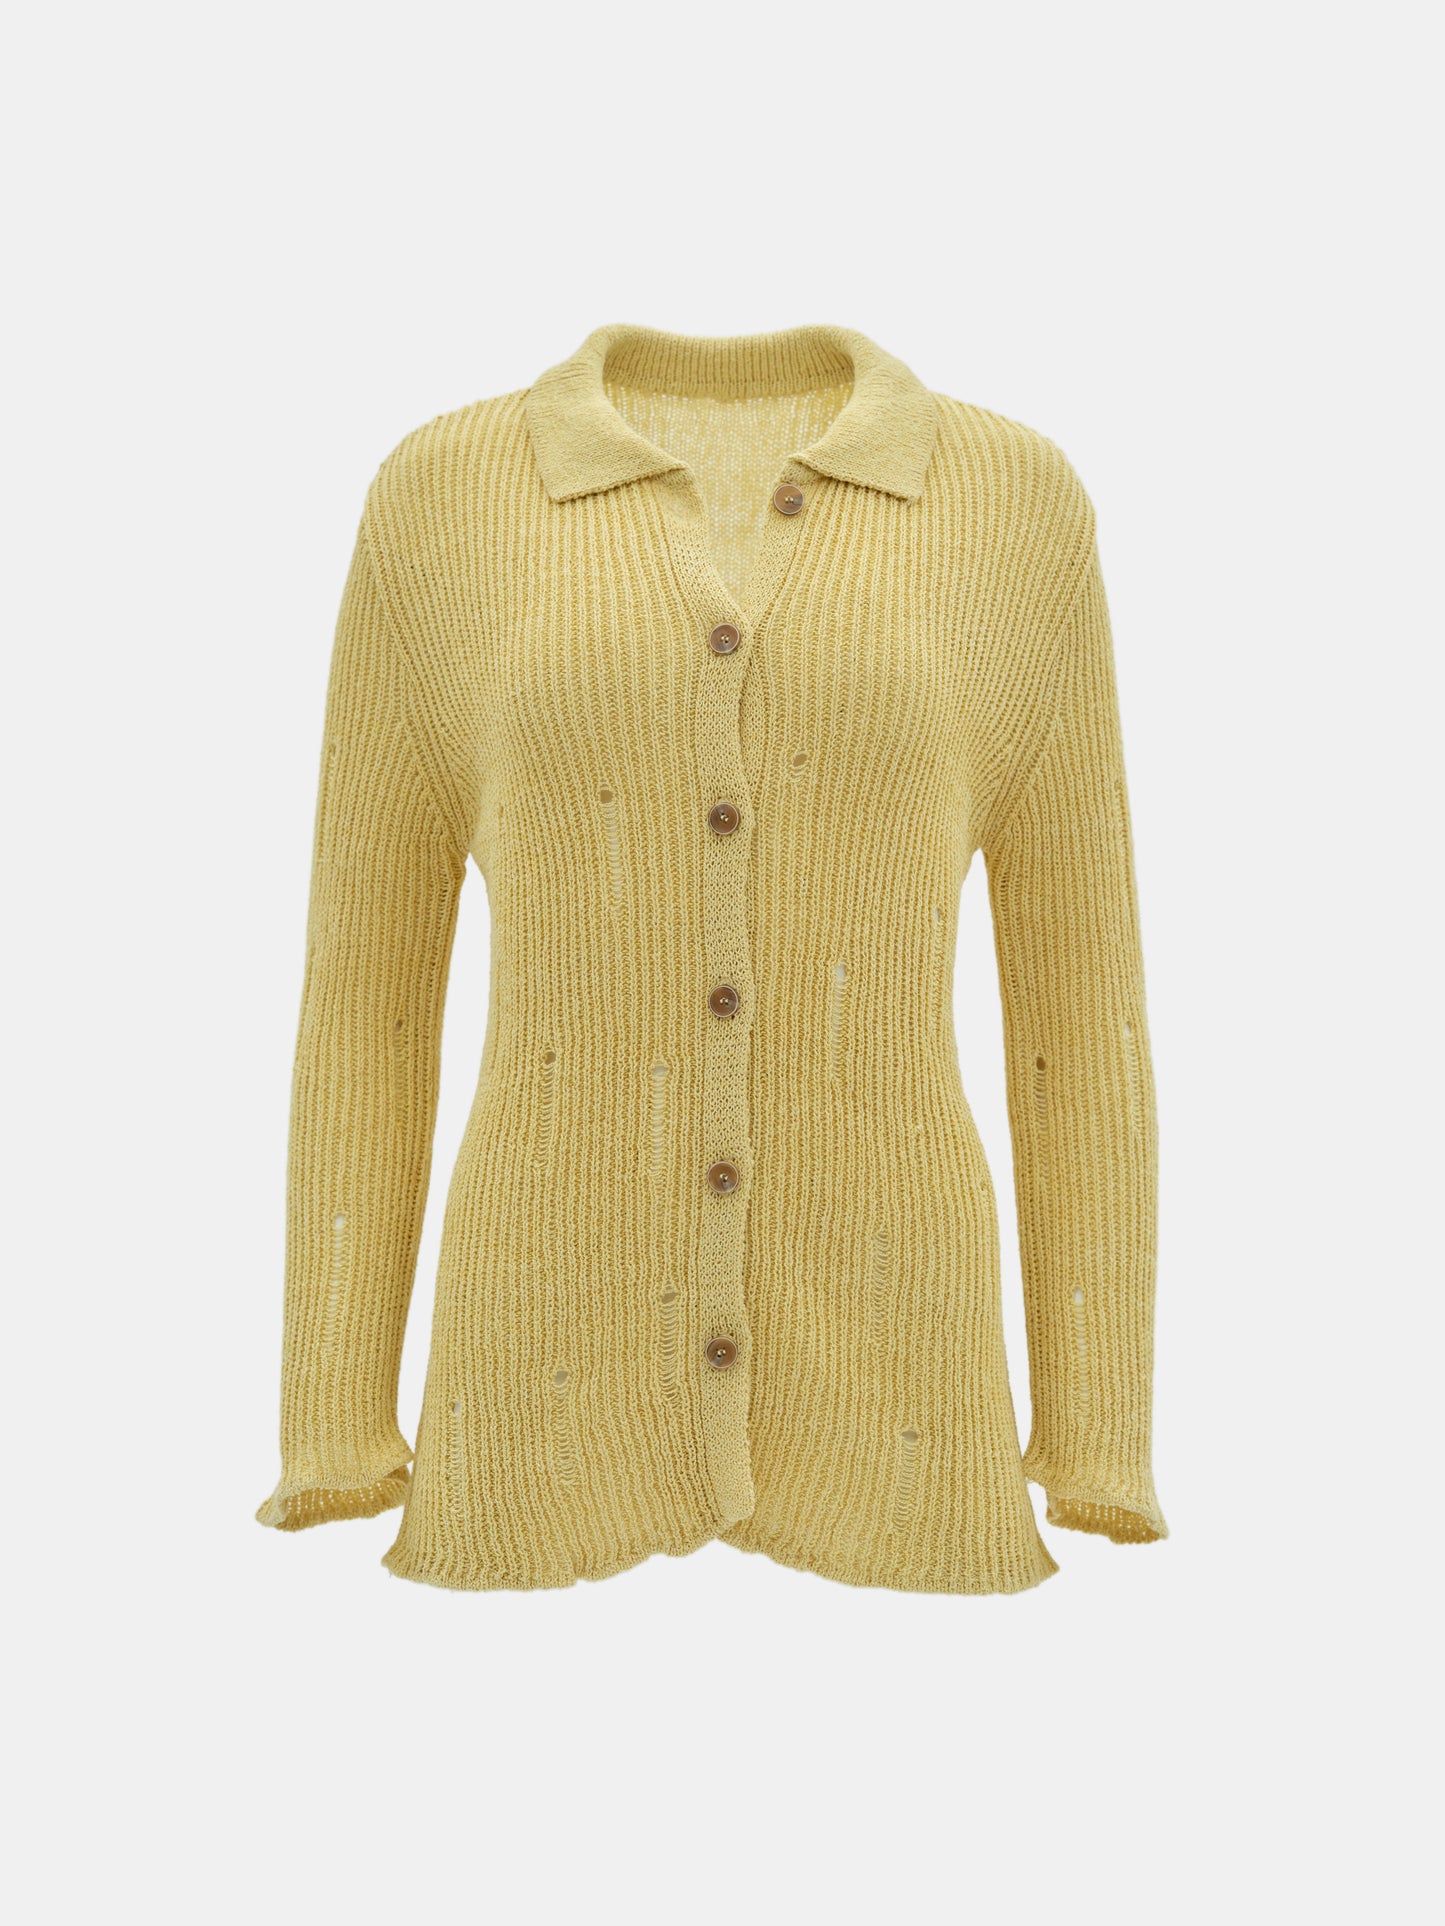 Shredded Knit Shirt, Butter Yellow